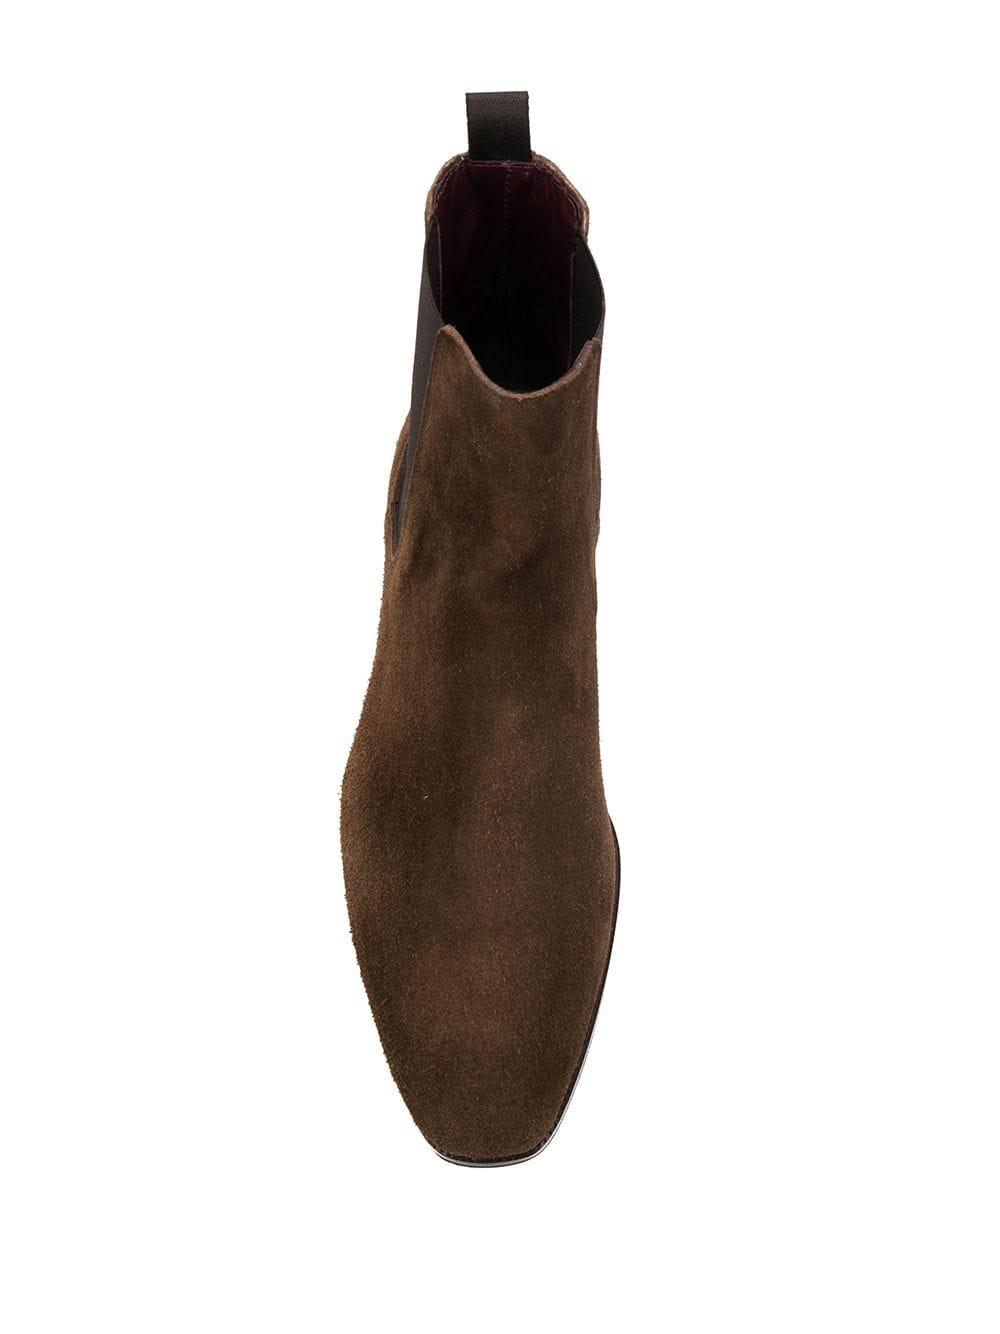 Lidfort Chelsea Boots in Brown for Men - Lyst